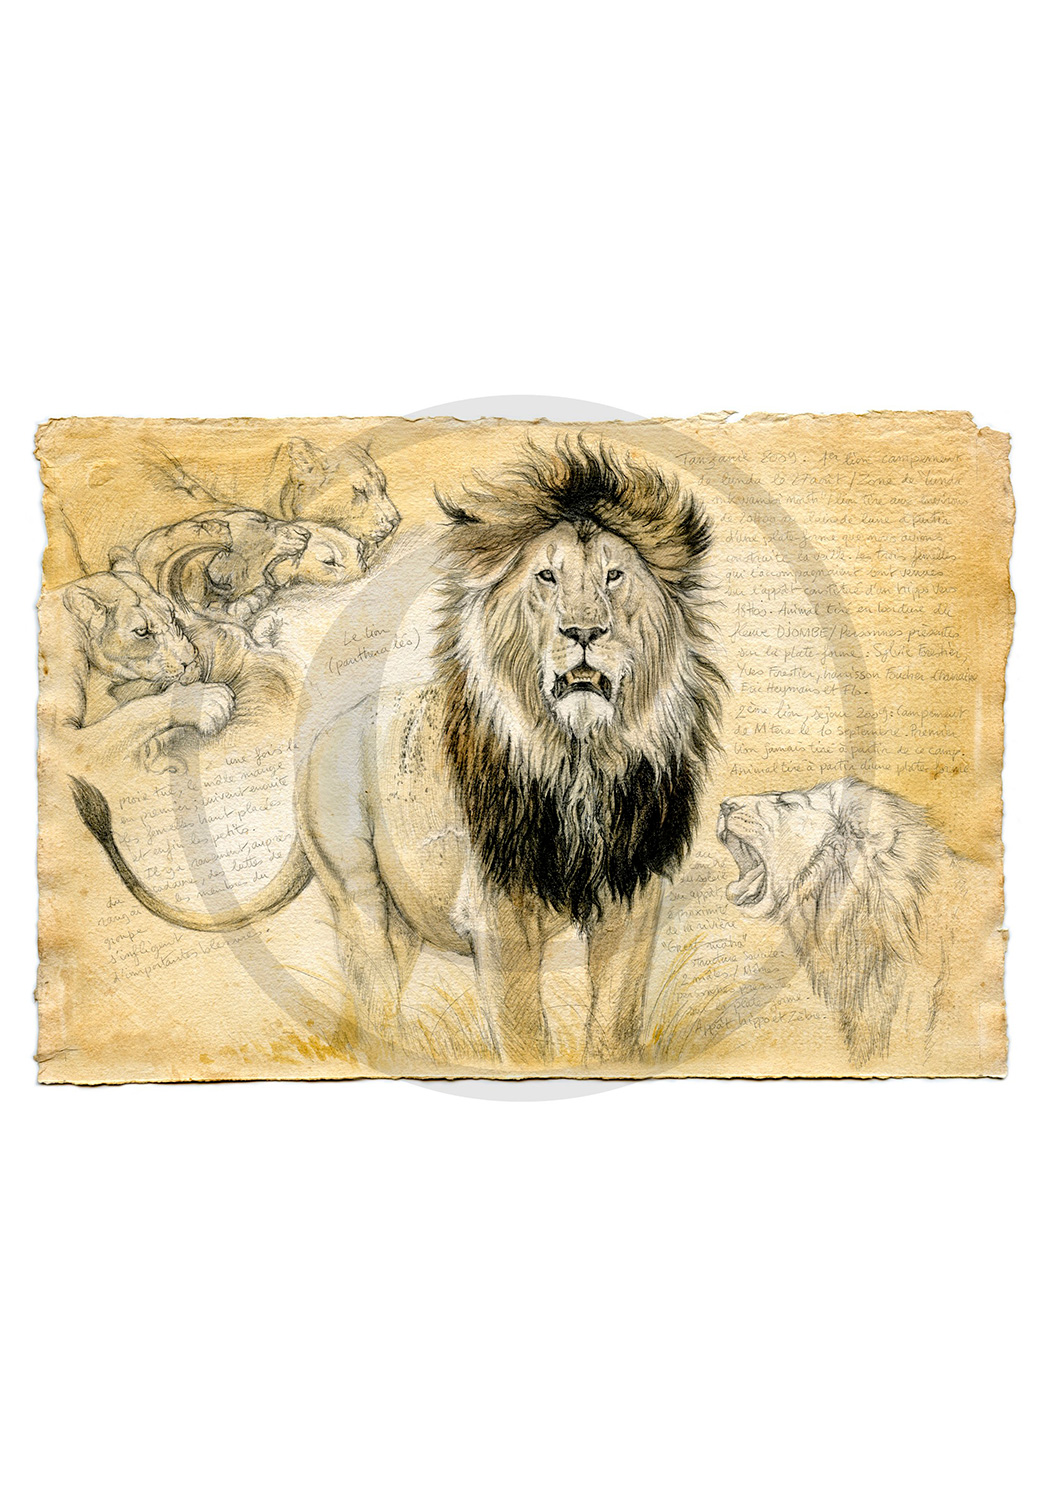 Marcello-art : Faune Zones Tropicales 04 - Lion Tanzanie 01